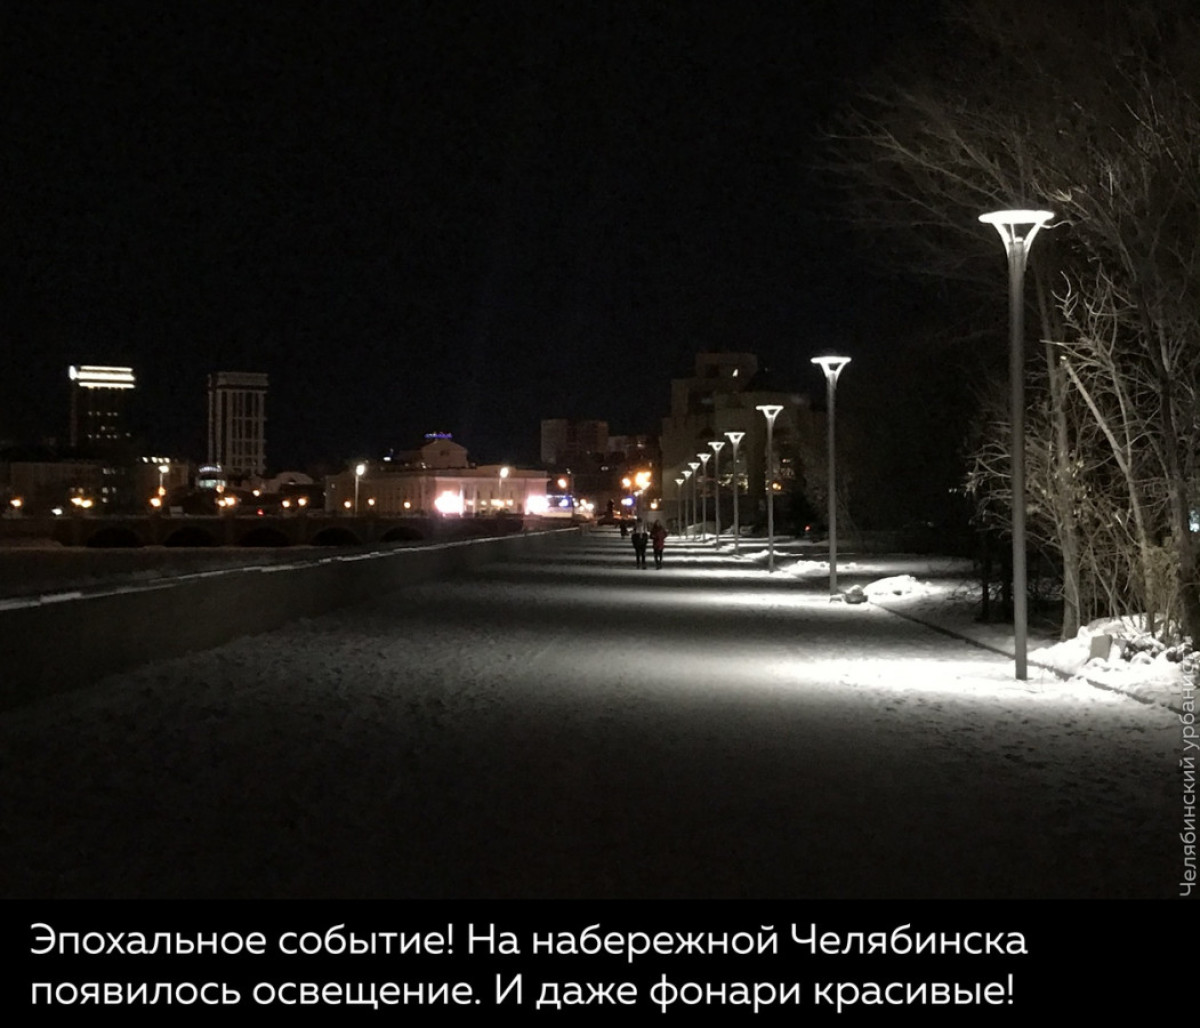 Освещение появилось на набережной реки Миасс в Челябинске